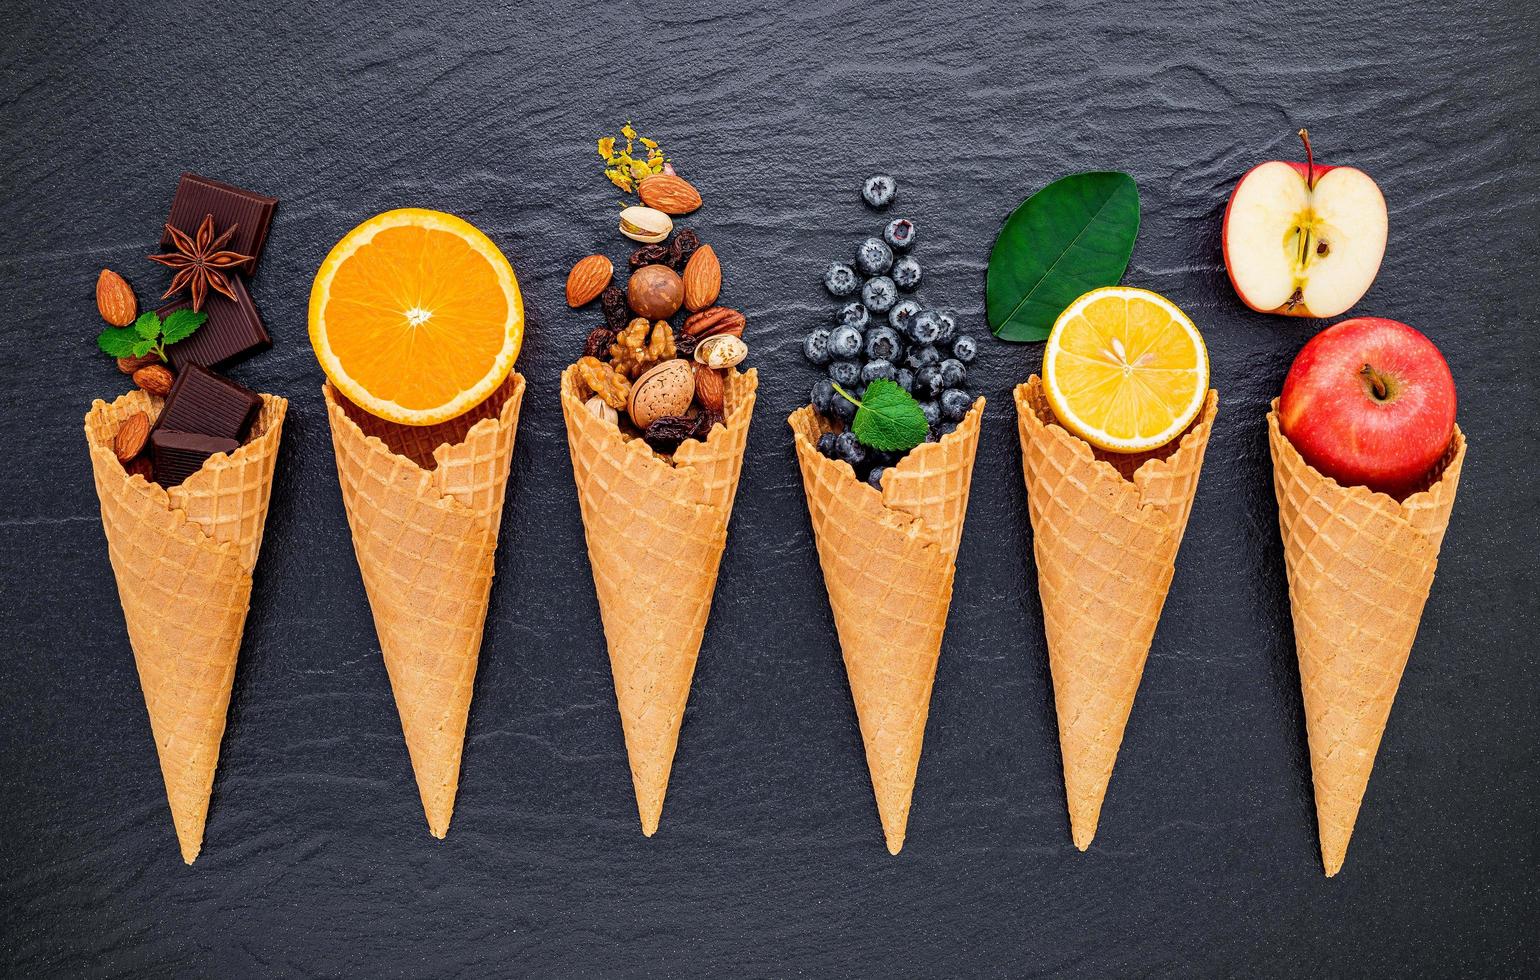 olika ingredienser för glasssmak i kottar som visar blåbär, lime, pistasch, mandel, apelsin, choklad, vanilj och kaffe på en mörk stenbakgrund. sommar- och sötmenykoncept. foto